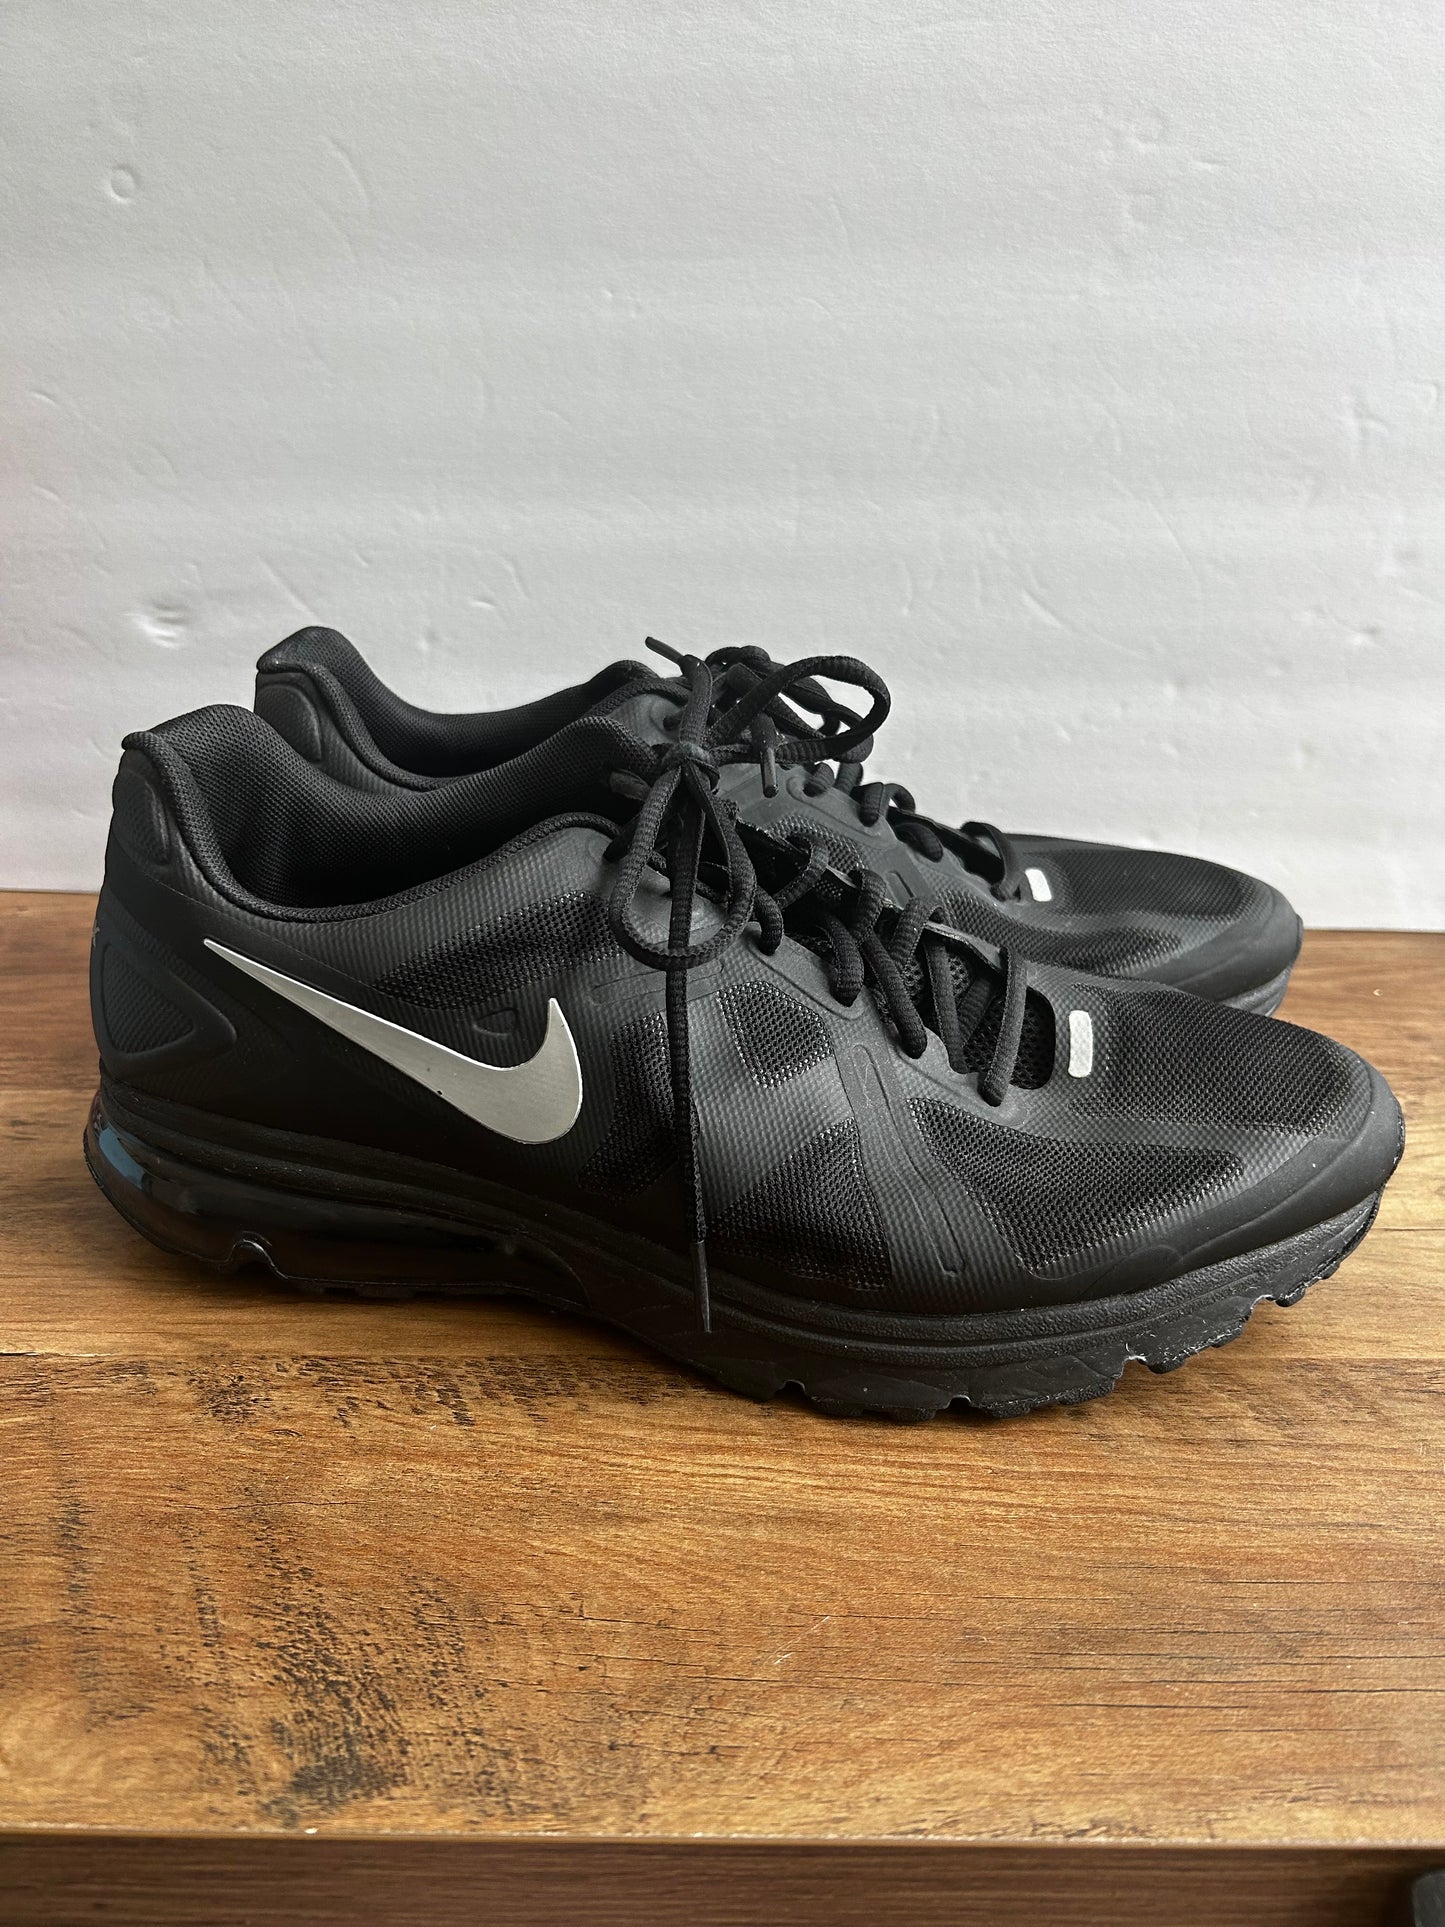 Size 12 Men's Black Nike AirMax